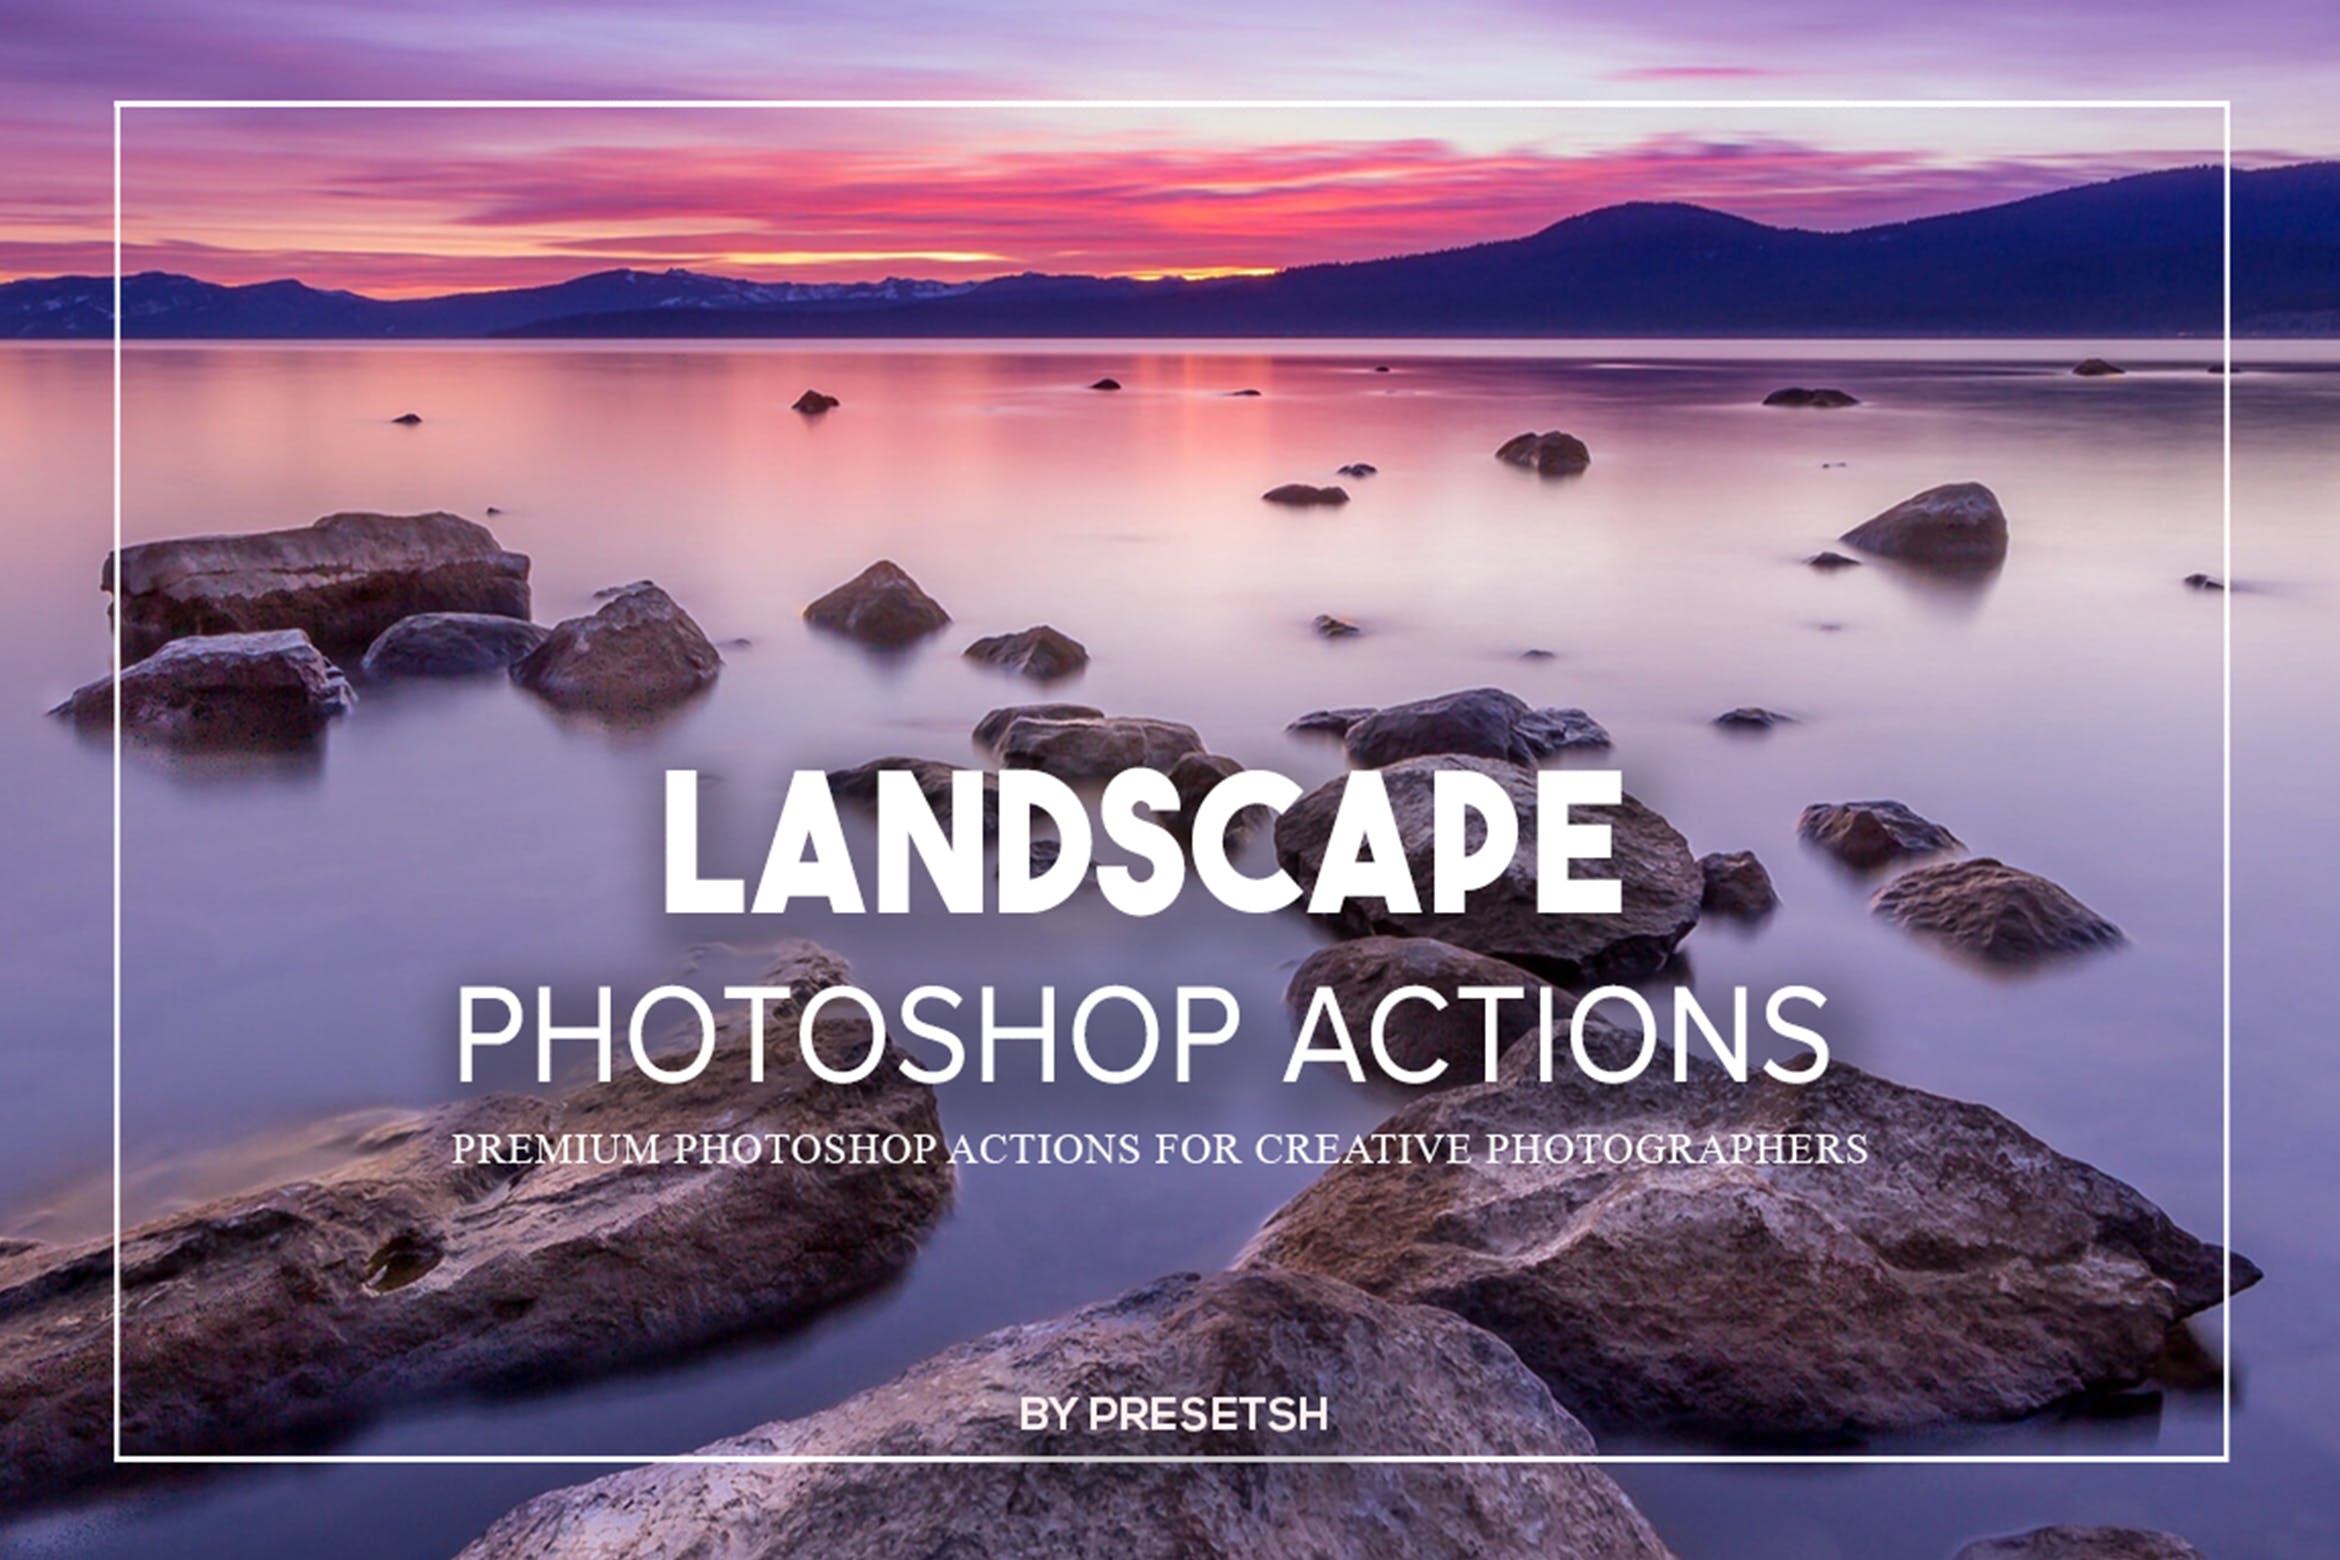 大自然风景照片处理Photoshop动作 Landscape Photoshop Actions 插件预设 第1张